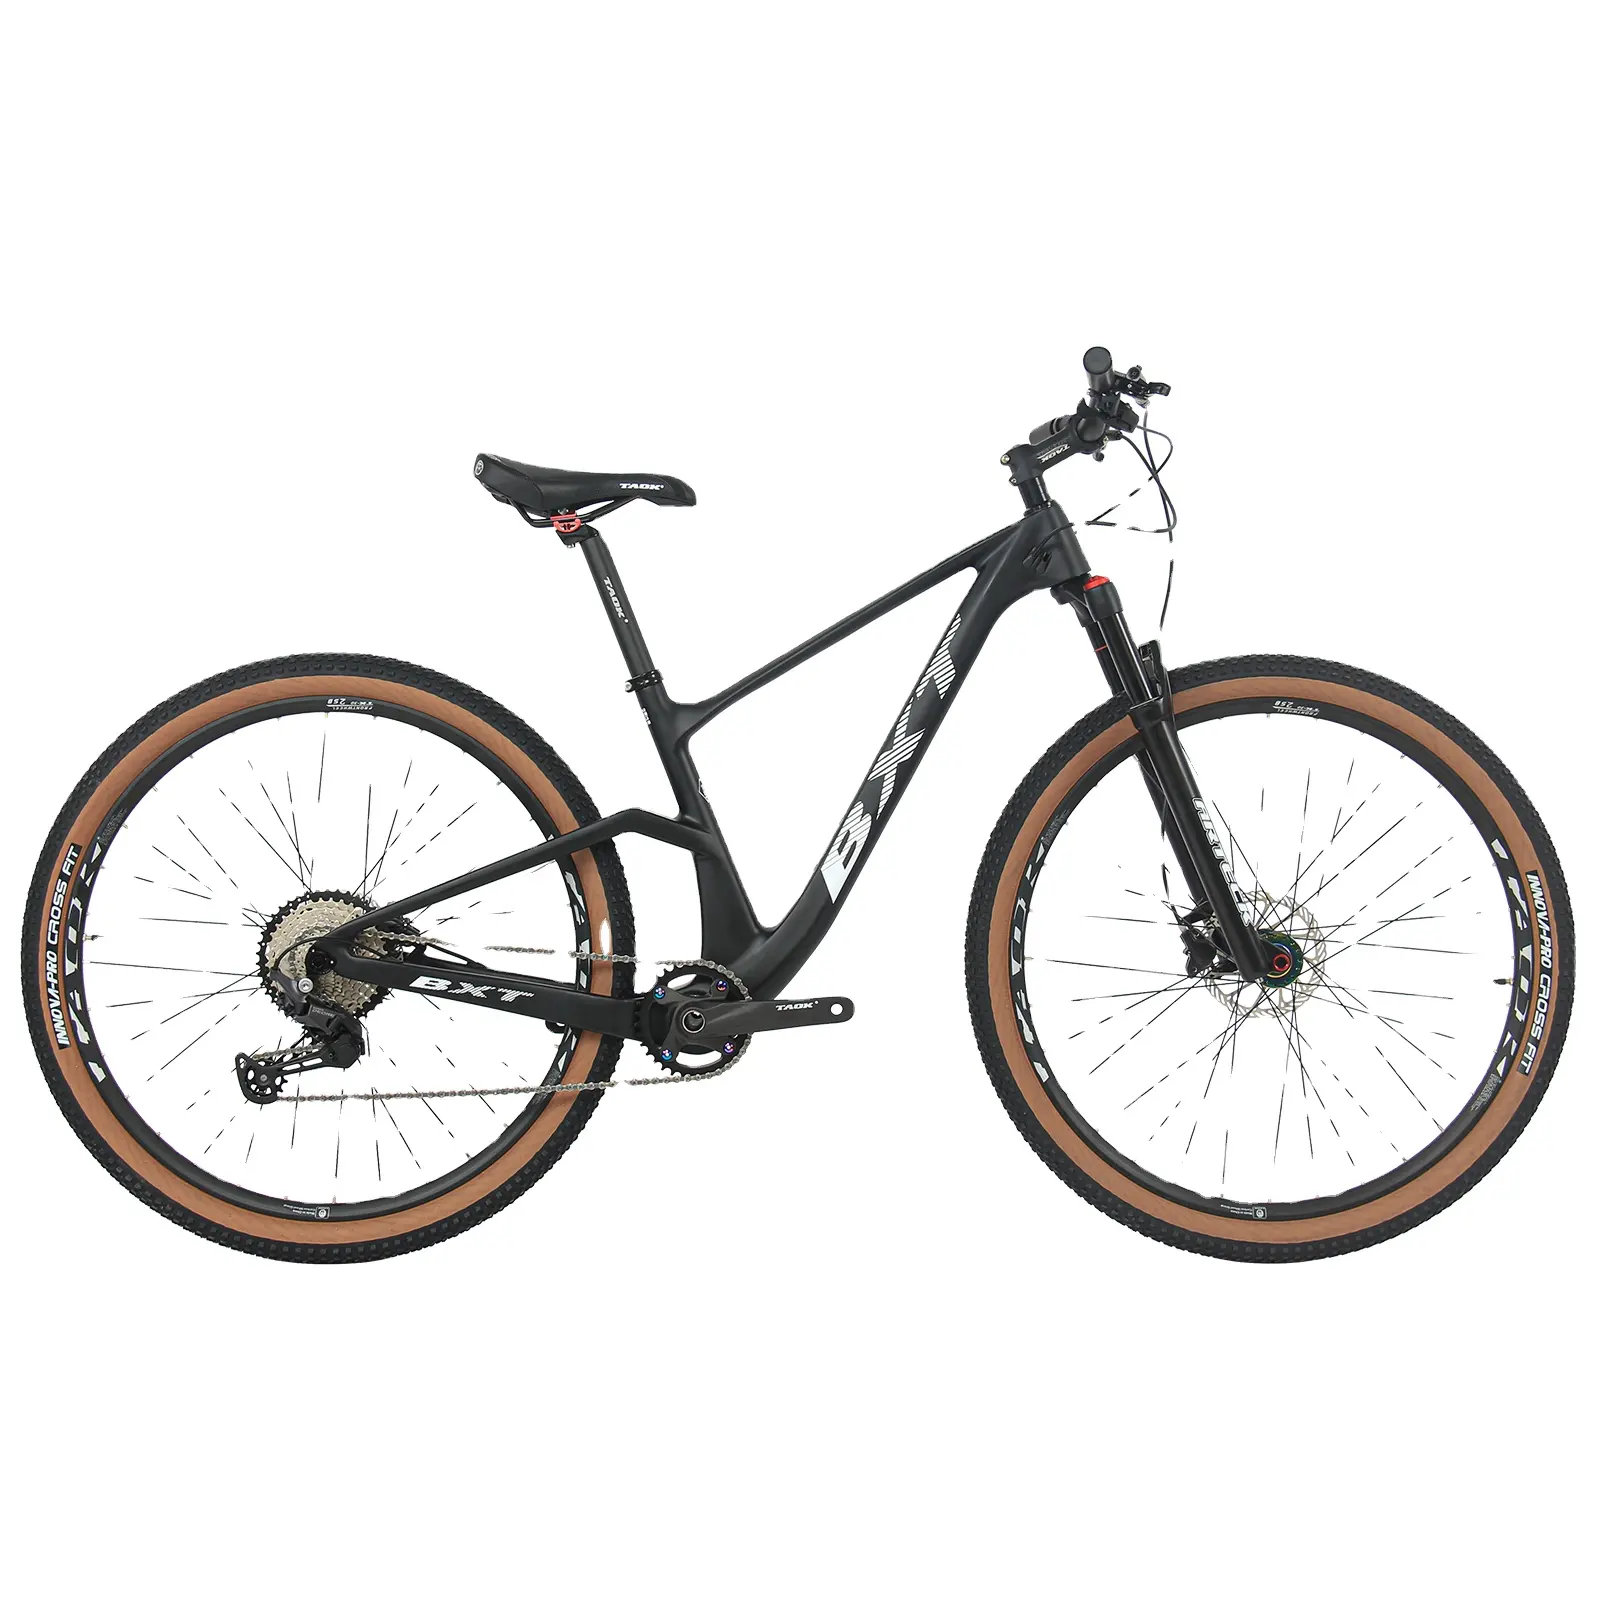 Quadro de bicicleta de carbono para mountain bike, suspensão completa de 29er, xc boosta2 m5100 groupset 1x11s